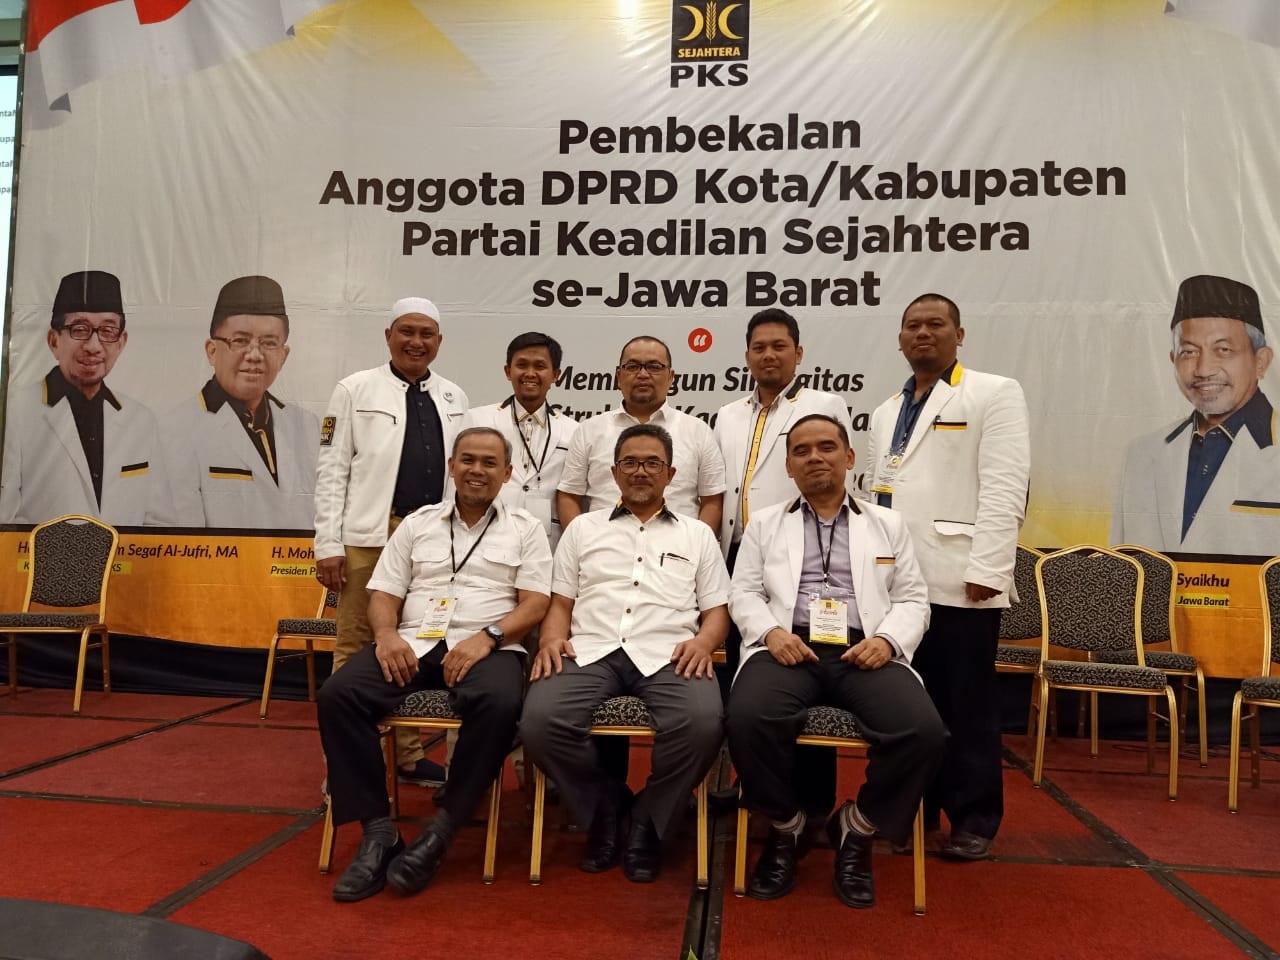 Pembekalan Anggota Dprd Pks Kotakabupaten Se Jawa Barat